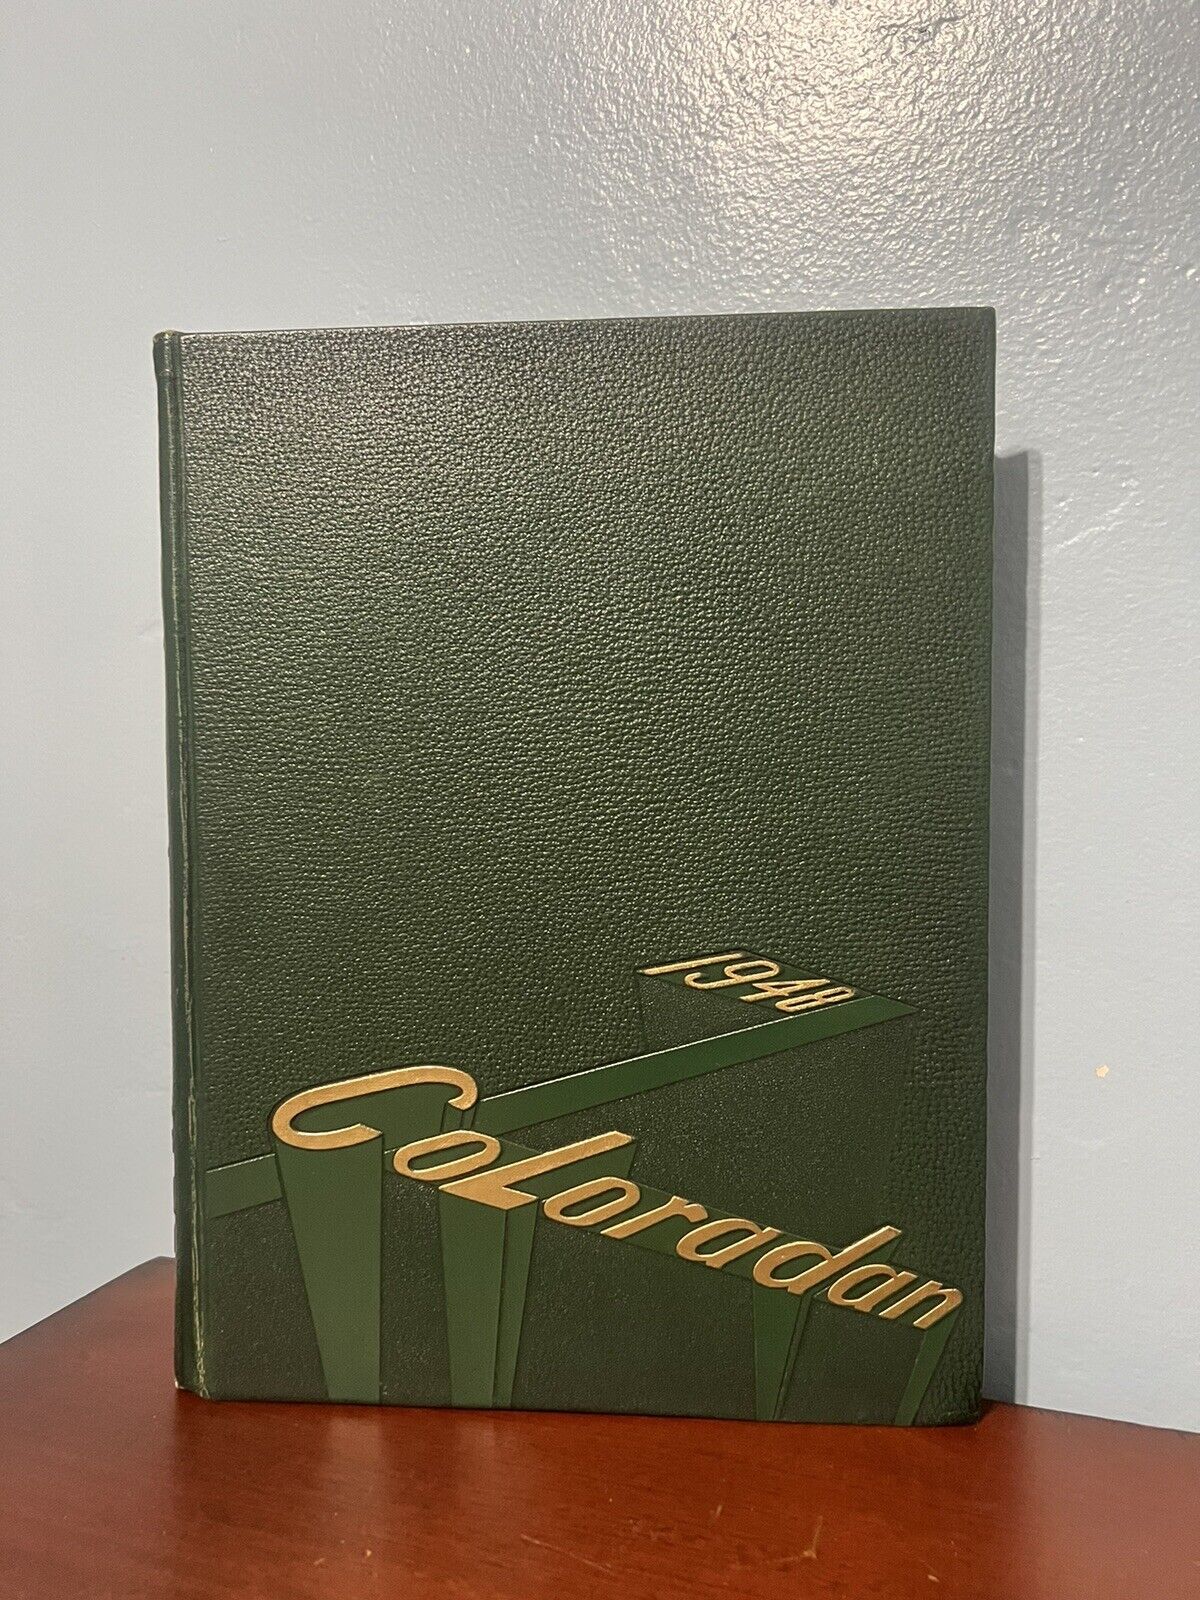 University of Colorado Boulder Coloradan 1948 Yearbook